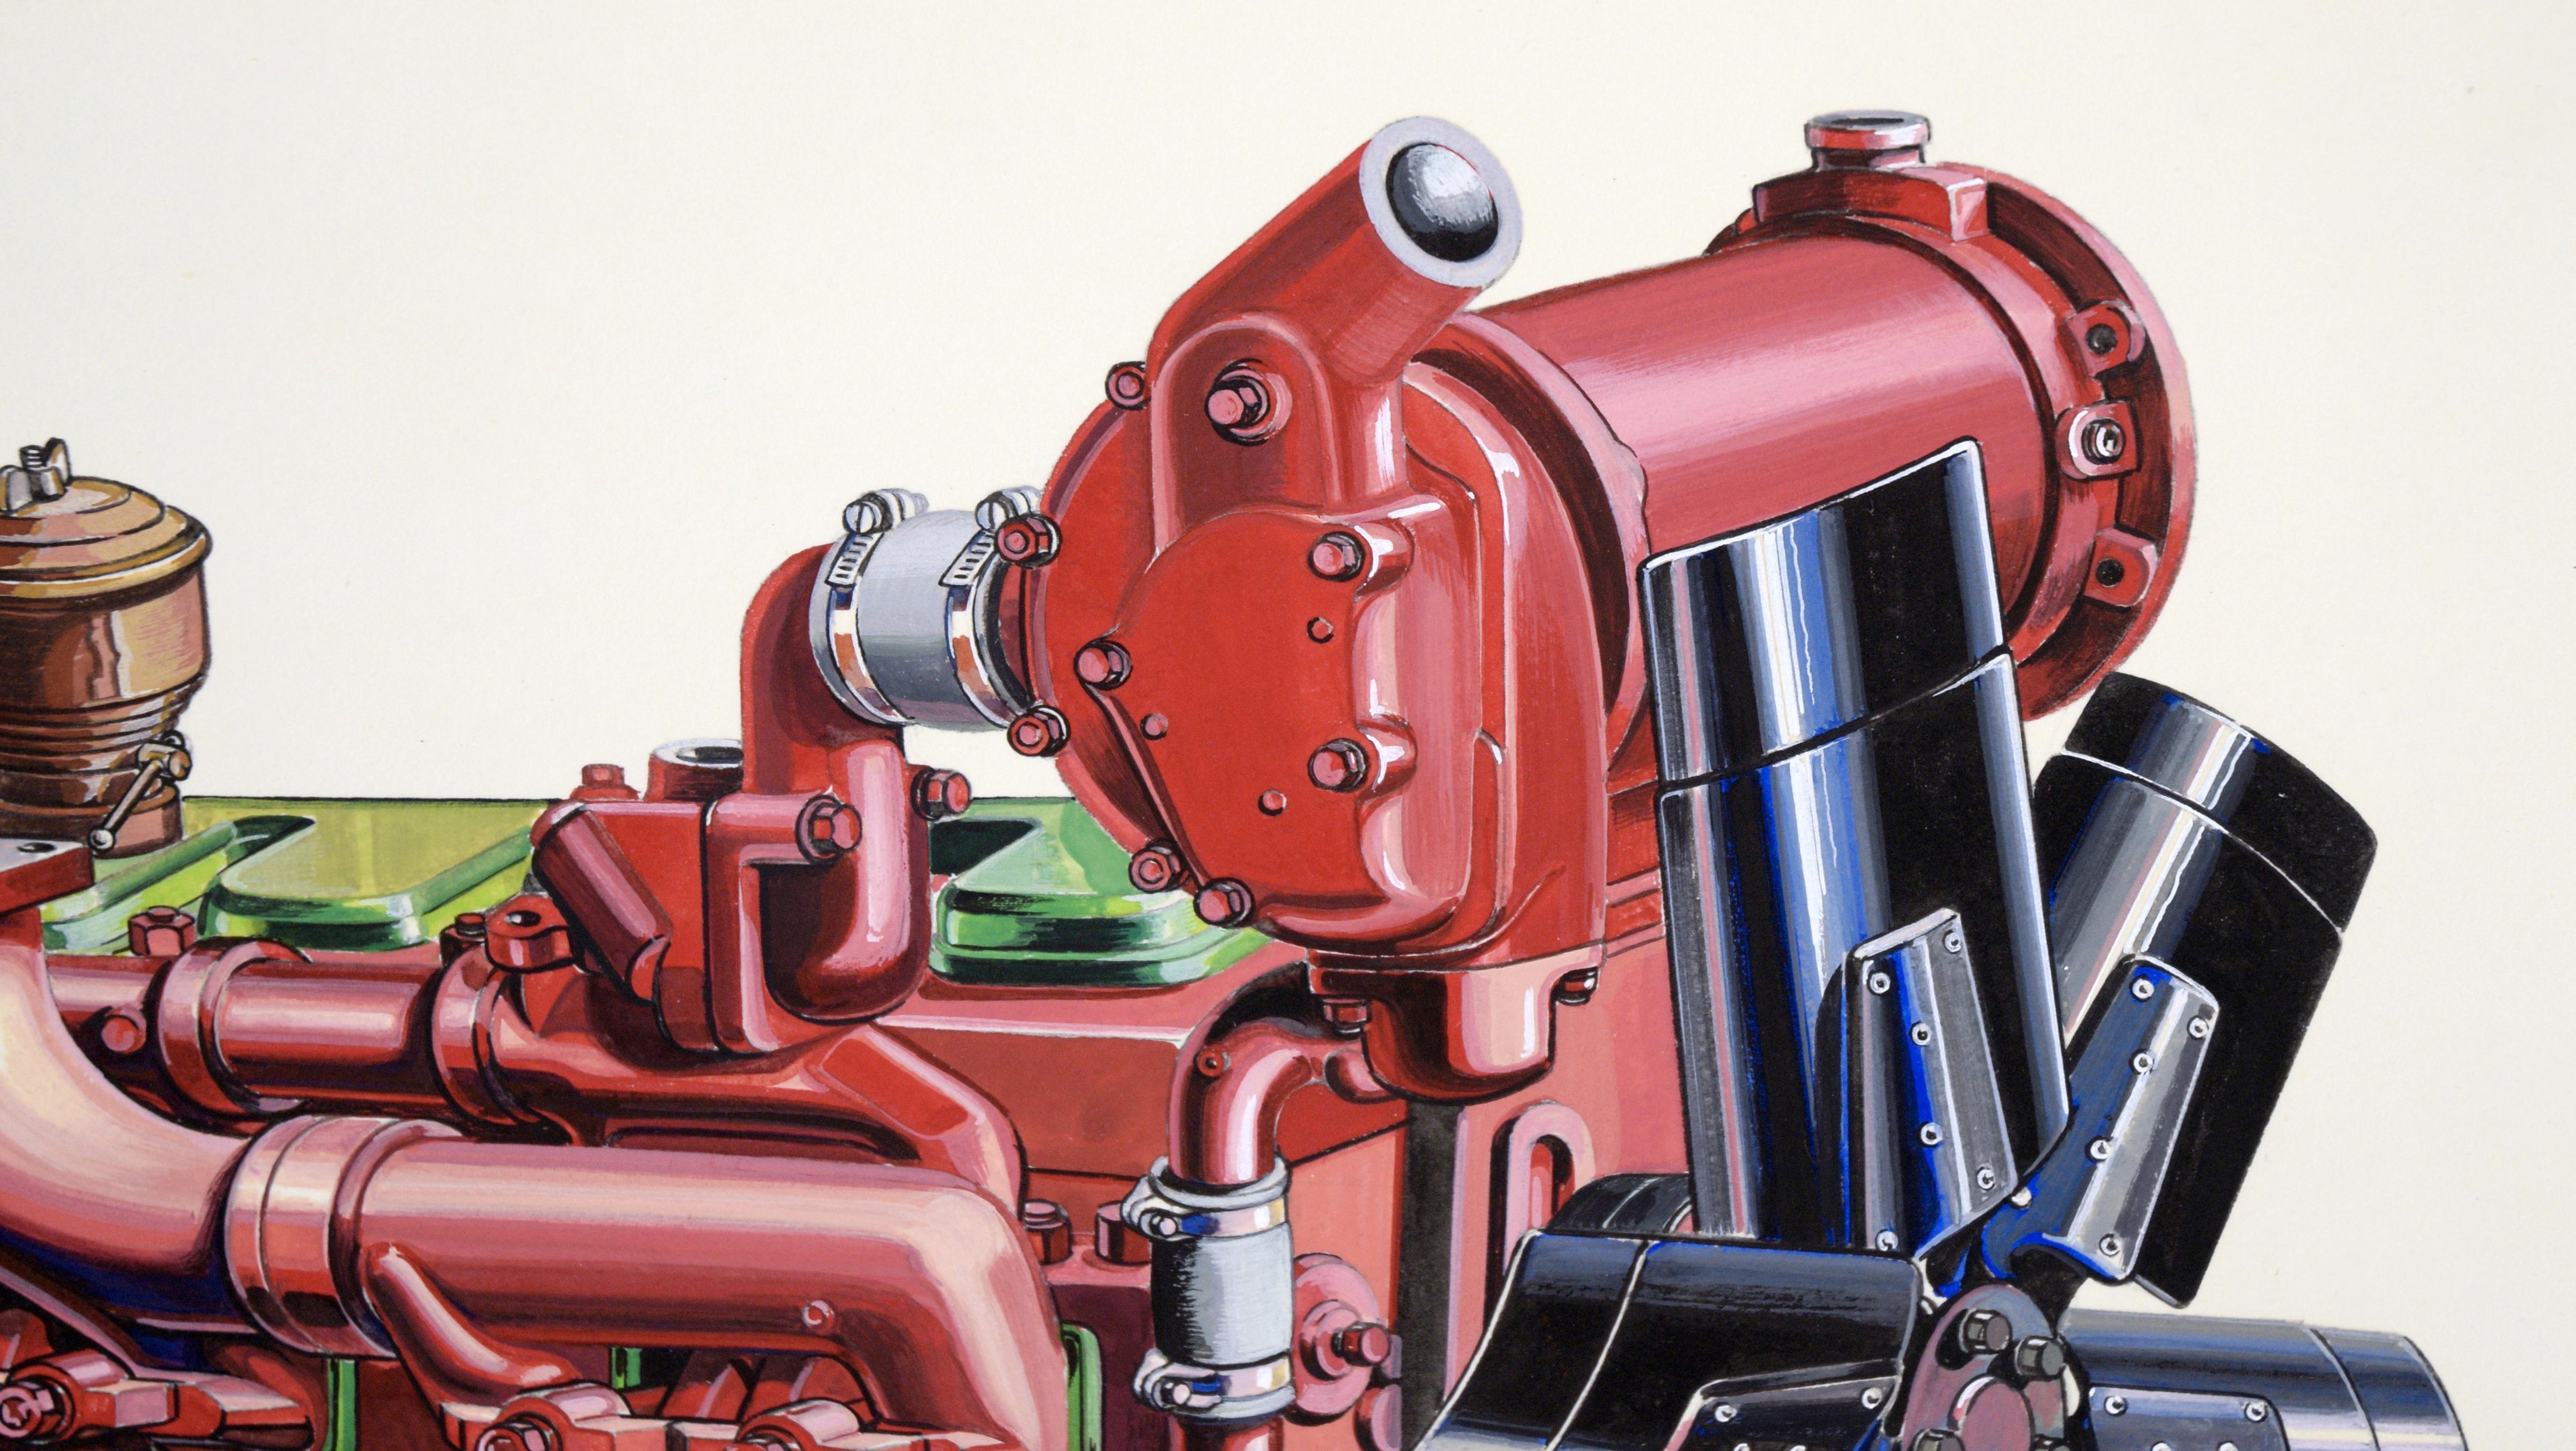 Technische Illustration eines Ford Lehman Dieselmotors in Gouache auf schwerem Karton

Sehr detaillierte und präzise Illustration eines Motors von Joseph Yeager (Amerikaner, 20. Jahrhundert). Der Motor ist leuchtend rot mit einigen grünen Akzenten.